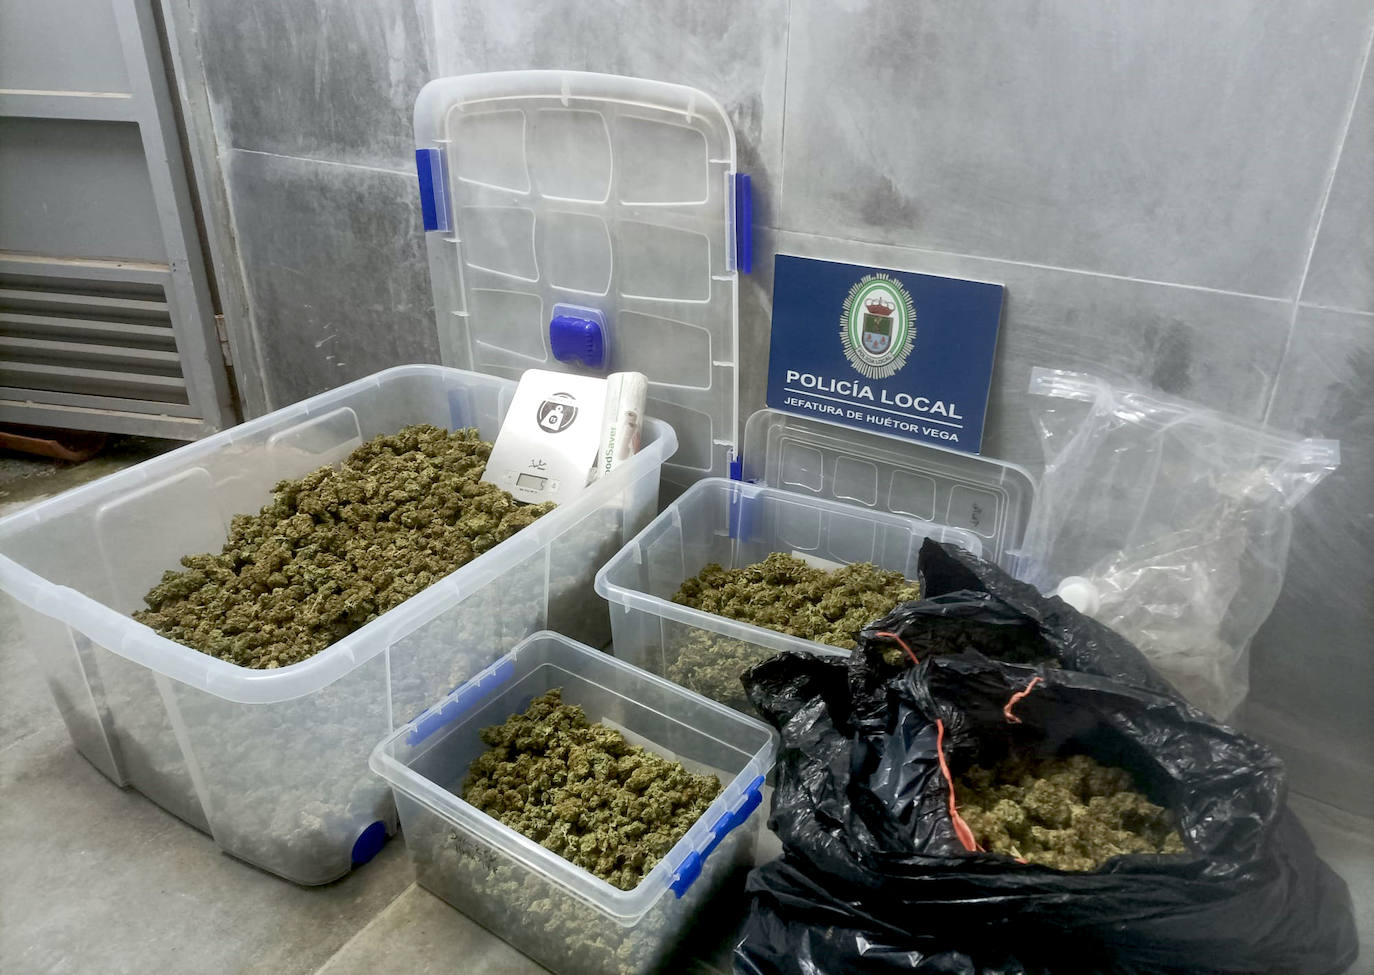 La marihuana hallada podría alcanzar un valor de 18.000 euros en el mercado.